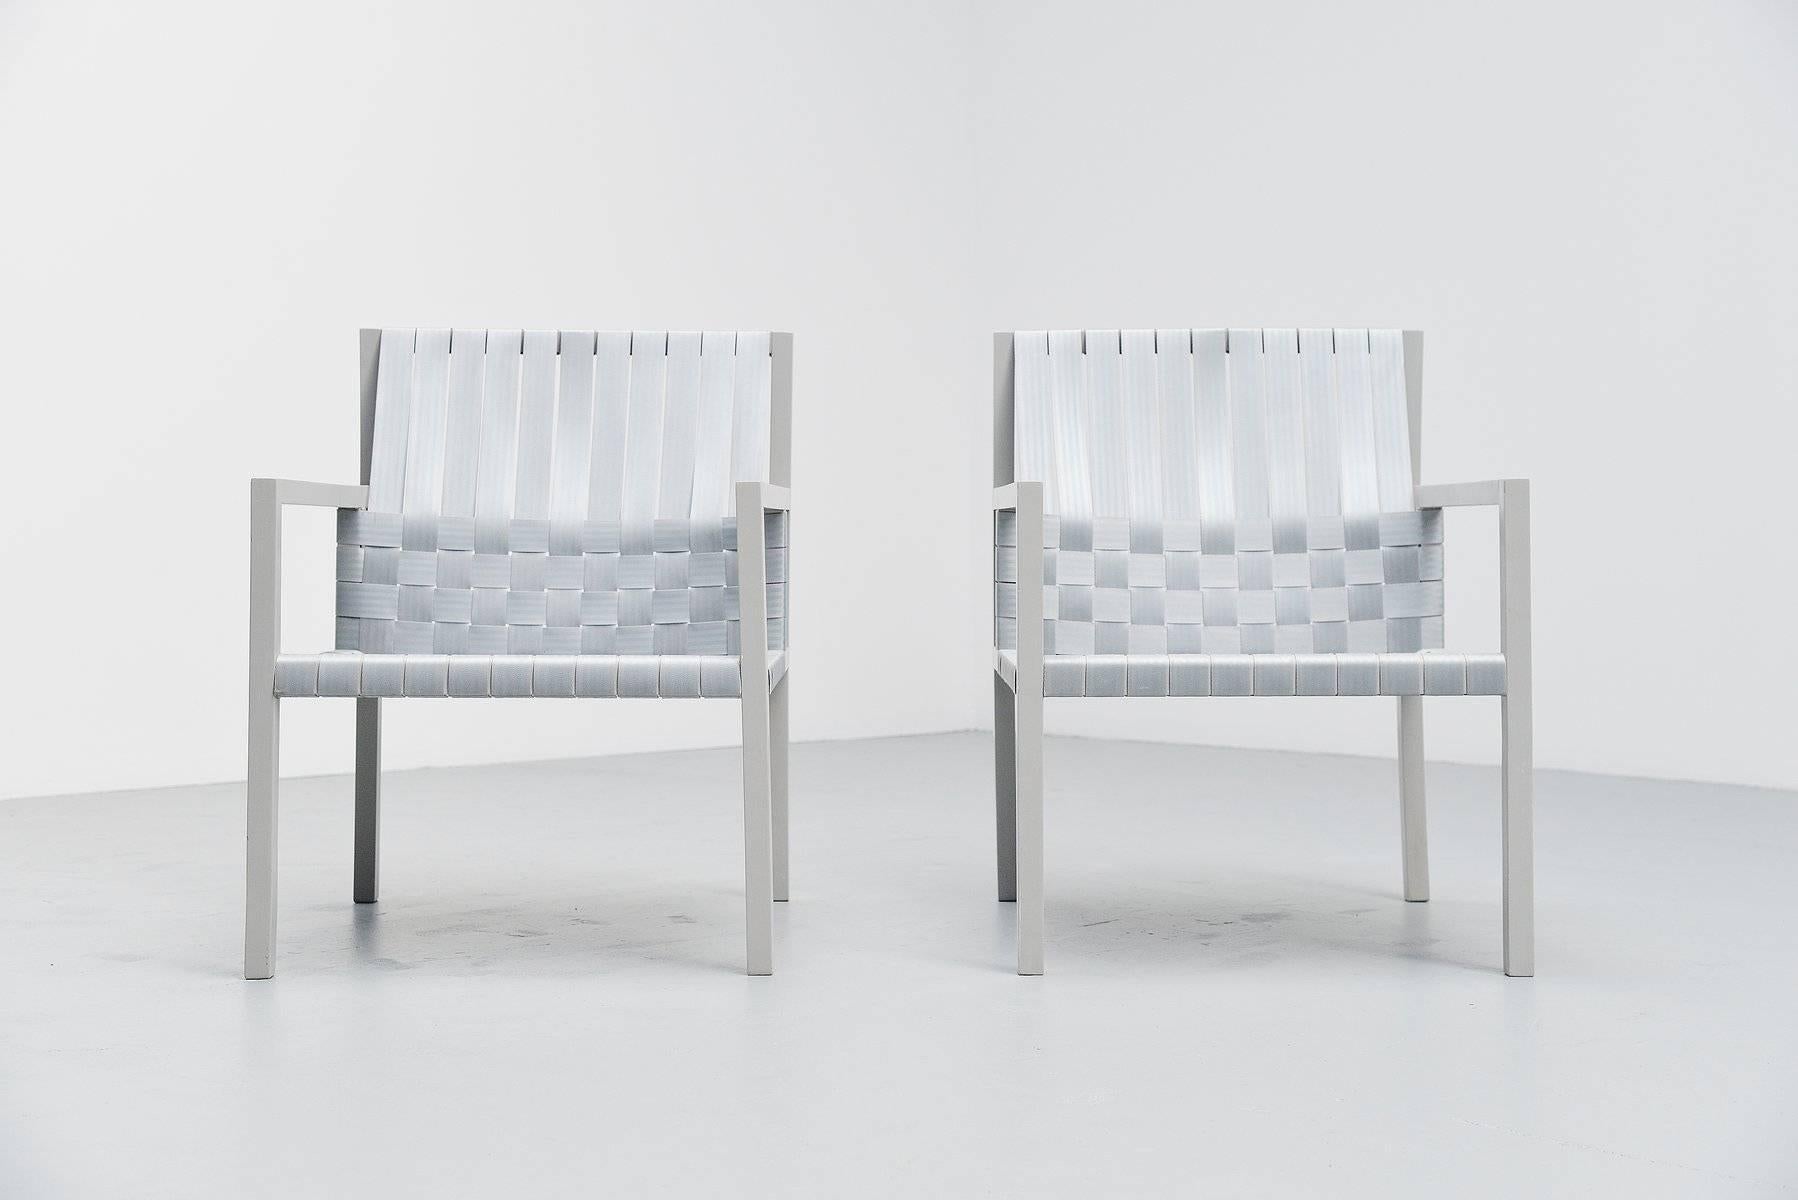 Fantastisches Sesselpaar, entworfen von Gijs Bakker für Castelijn, Holland, 1978. Dieser Stuhl wurde Gurtstuhl genannt, erhielt aber bald den Namen Sitzgurtstuhl, da die Sitze aus gewebten Sicherheitsgurten bestehen. Dieser Stuhl wurde 1978